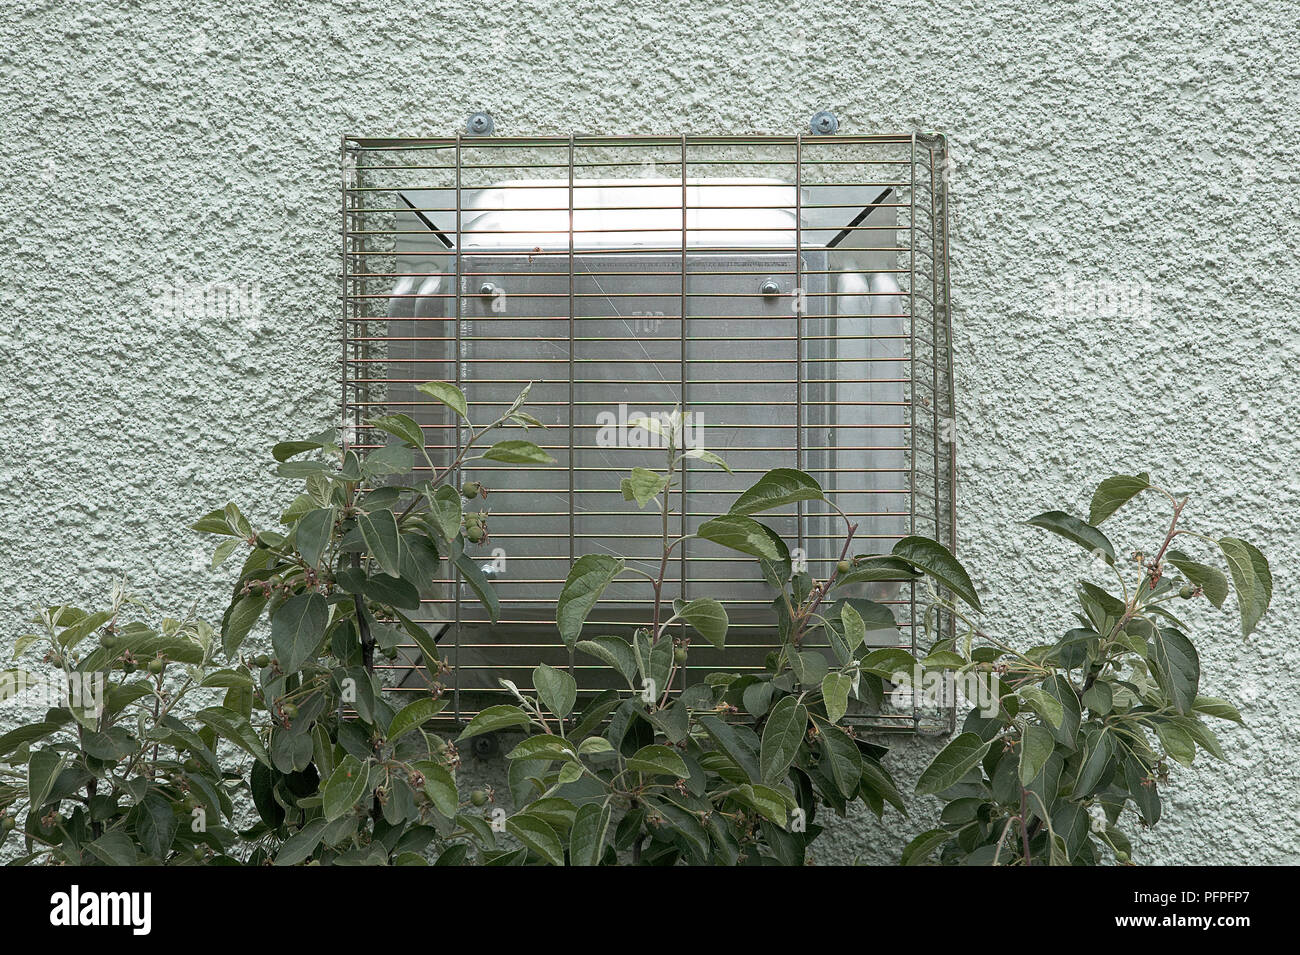 Cheminée chaudière moderne avec grille de métal sur mur extérieur de maison obstrué par la végétation Banque D'Images